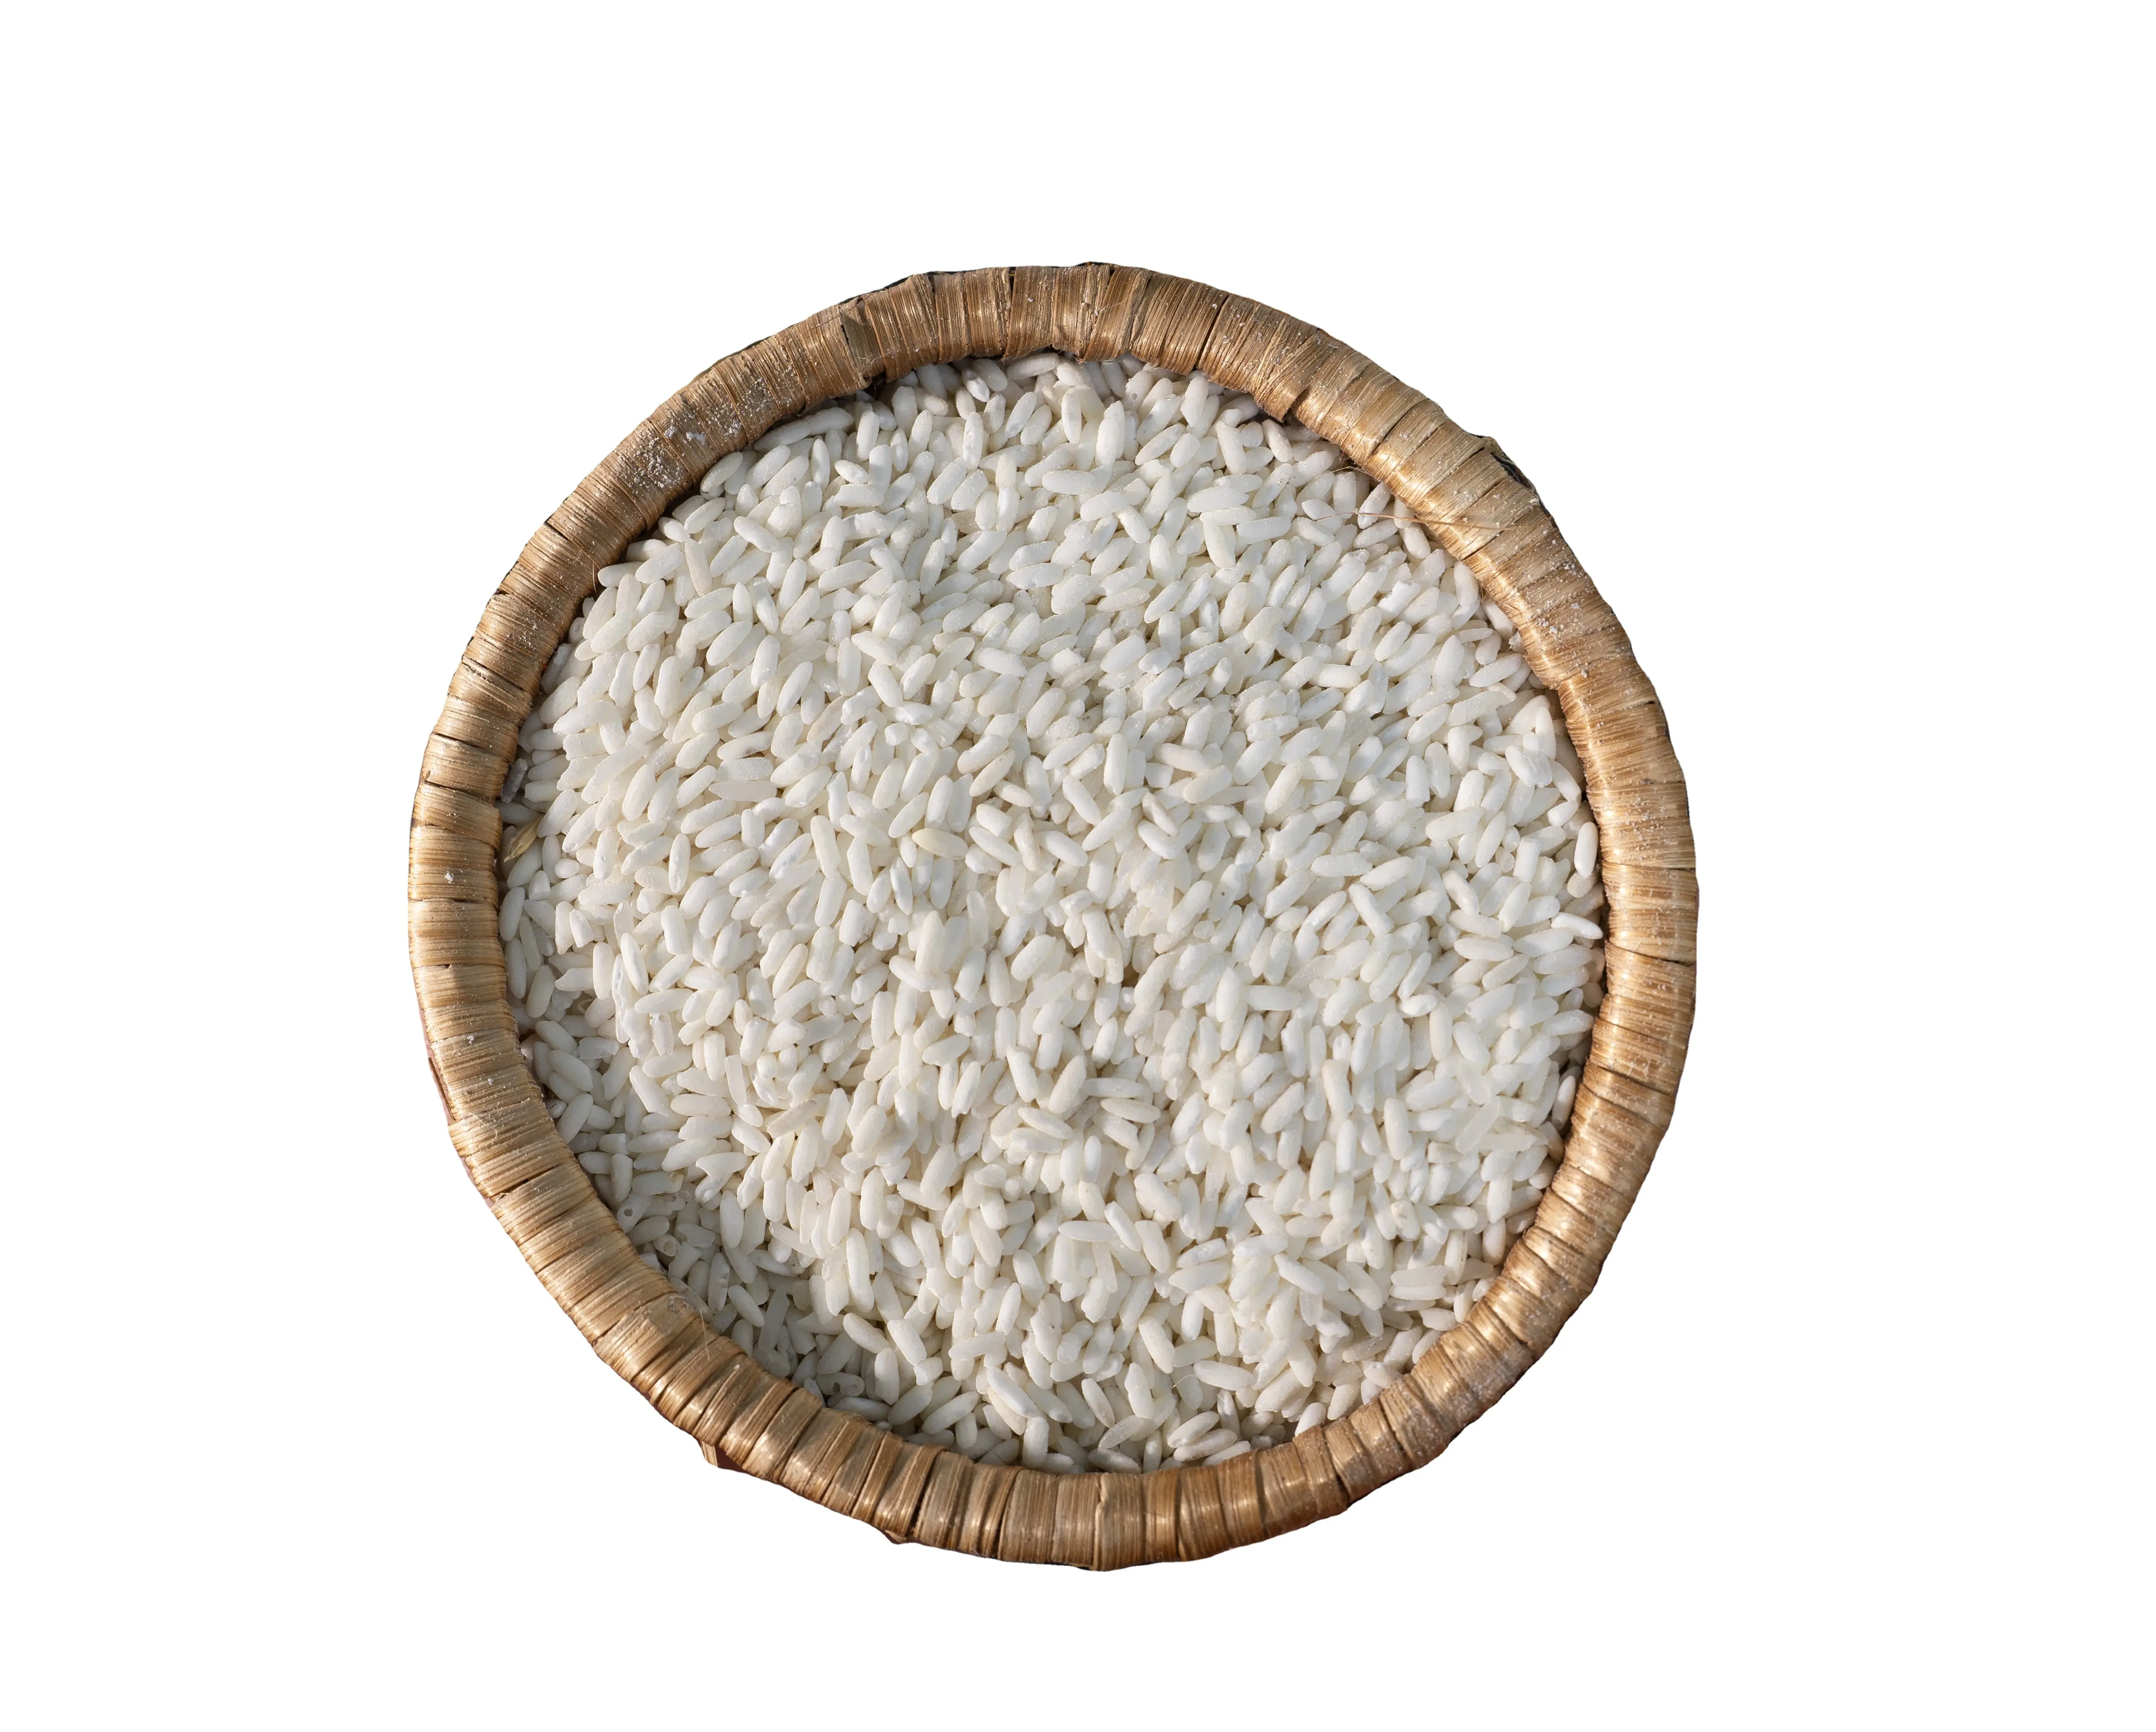 Gạo nếp Việt Nam cao cấp: gạo trắng hạt dài chất lượng cao 100% vỡ, có nguồn gốc từ gạo Việt Nam